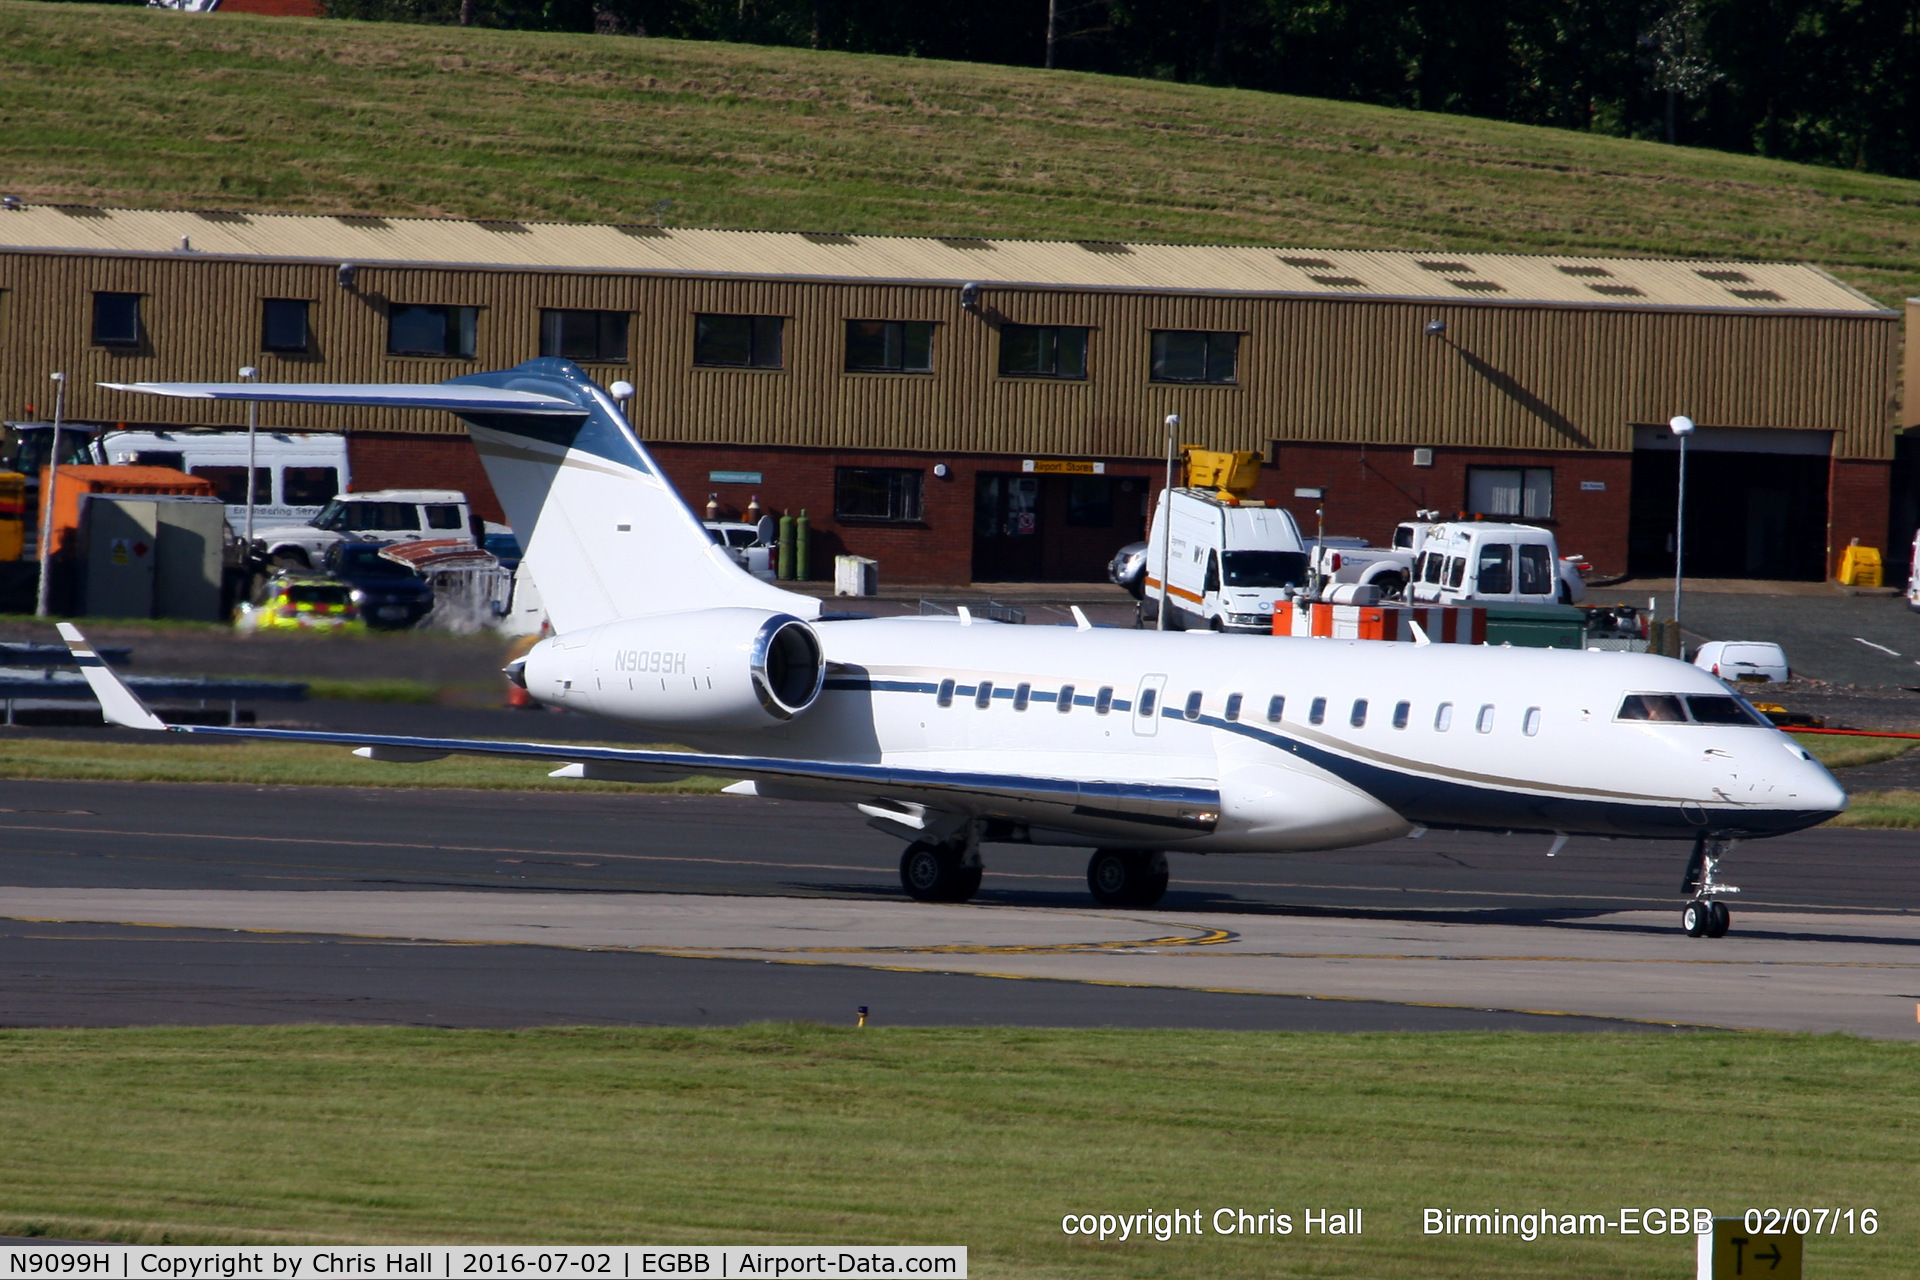 N9099H, 2012 Bombardier BD-700-1A10 Global 6000 C/N 9557, at Birmingham